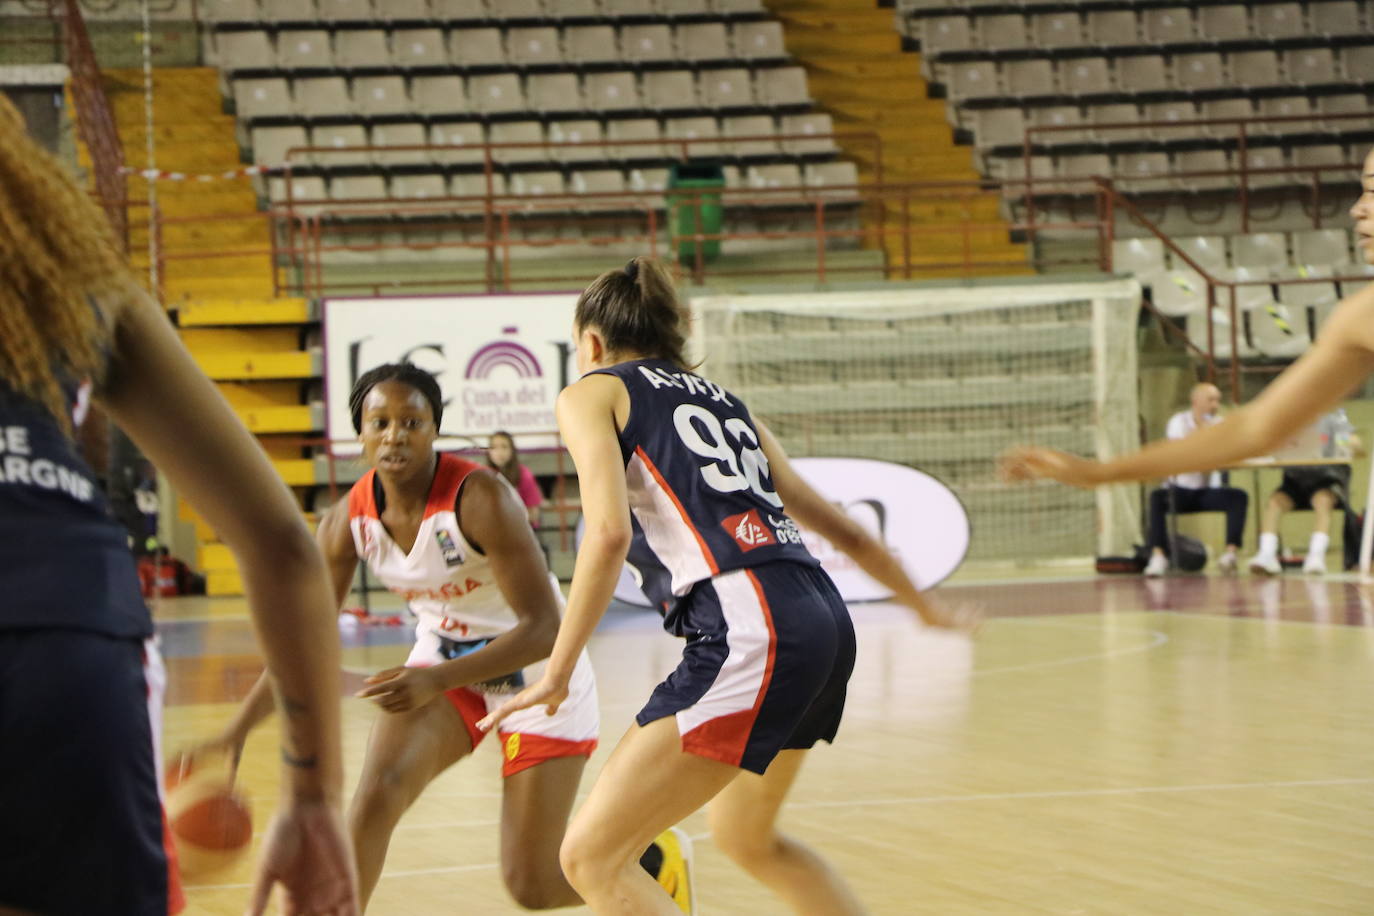 Imagen del encuentro entre España y Francia sub 20 femenino de baloncesto en León.